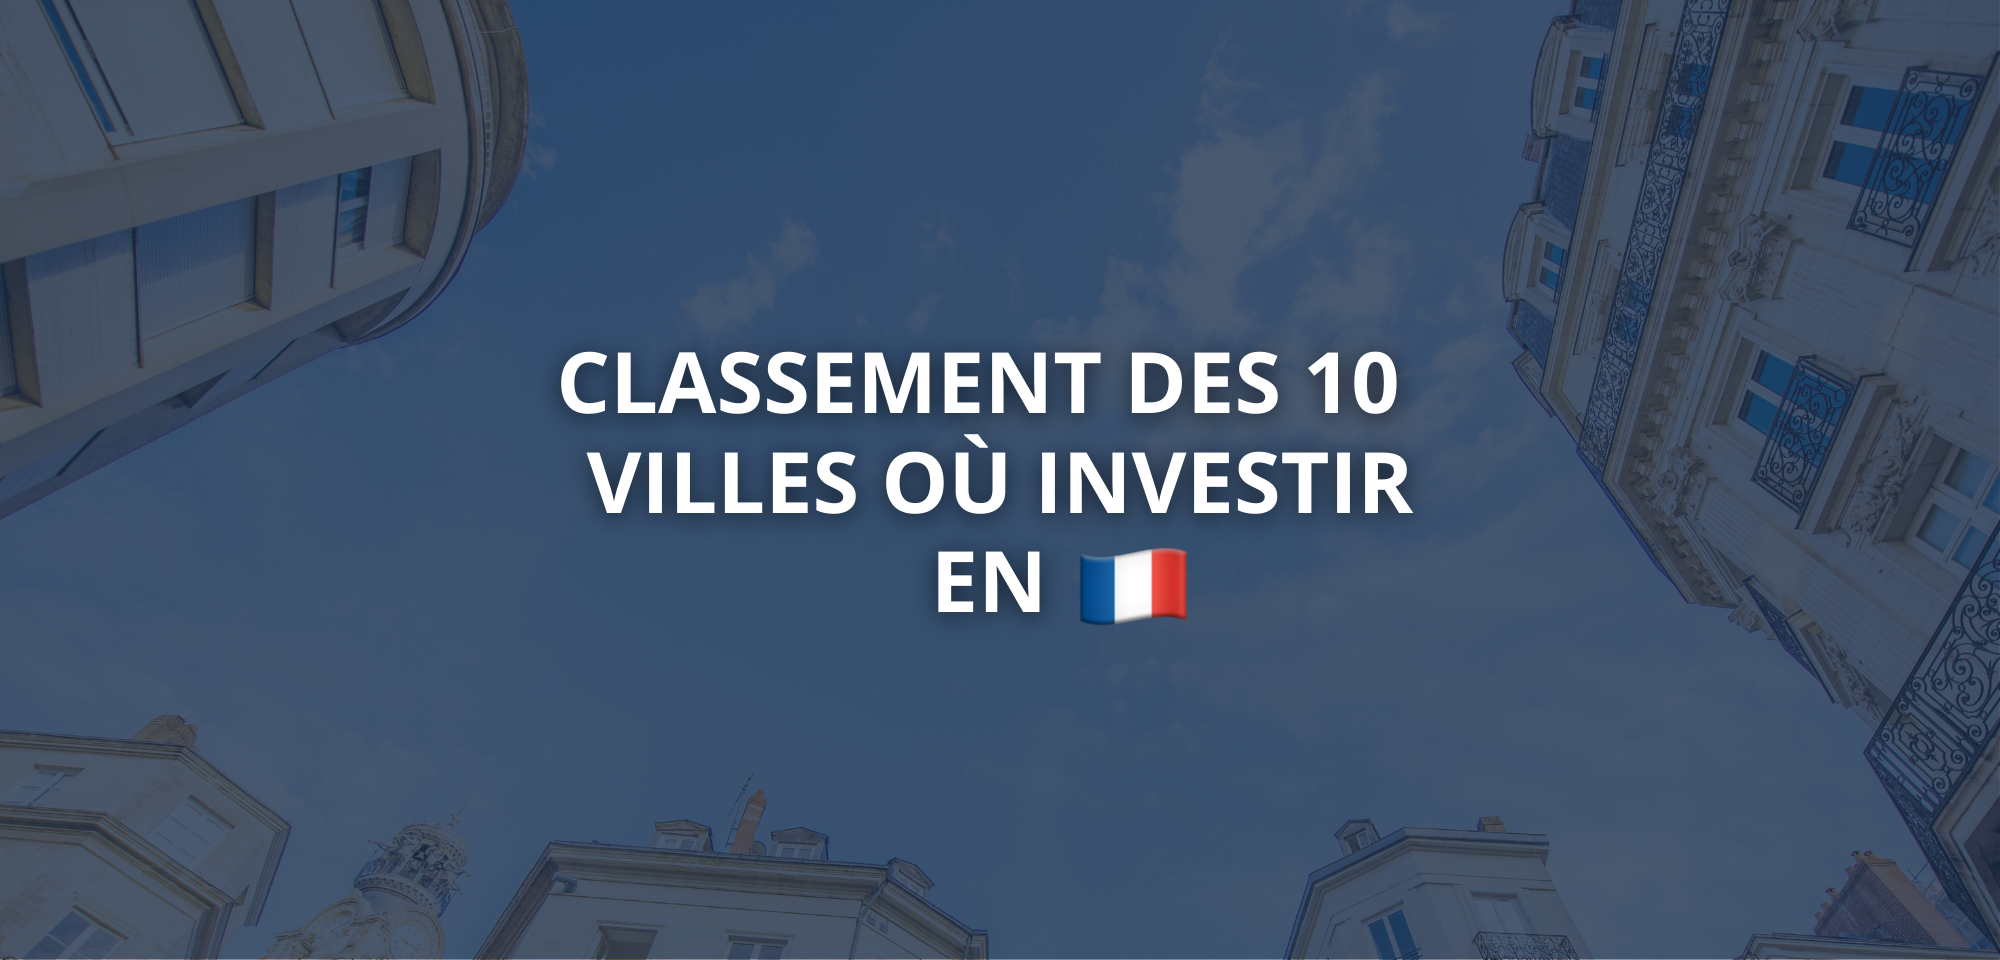 Classement des 10 meilleures villes où investir dans l'immobilier en France